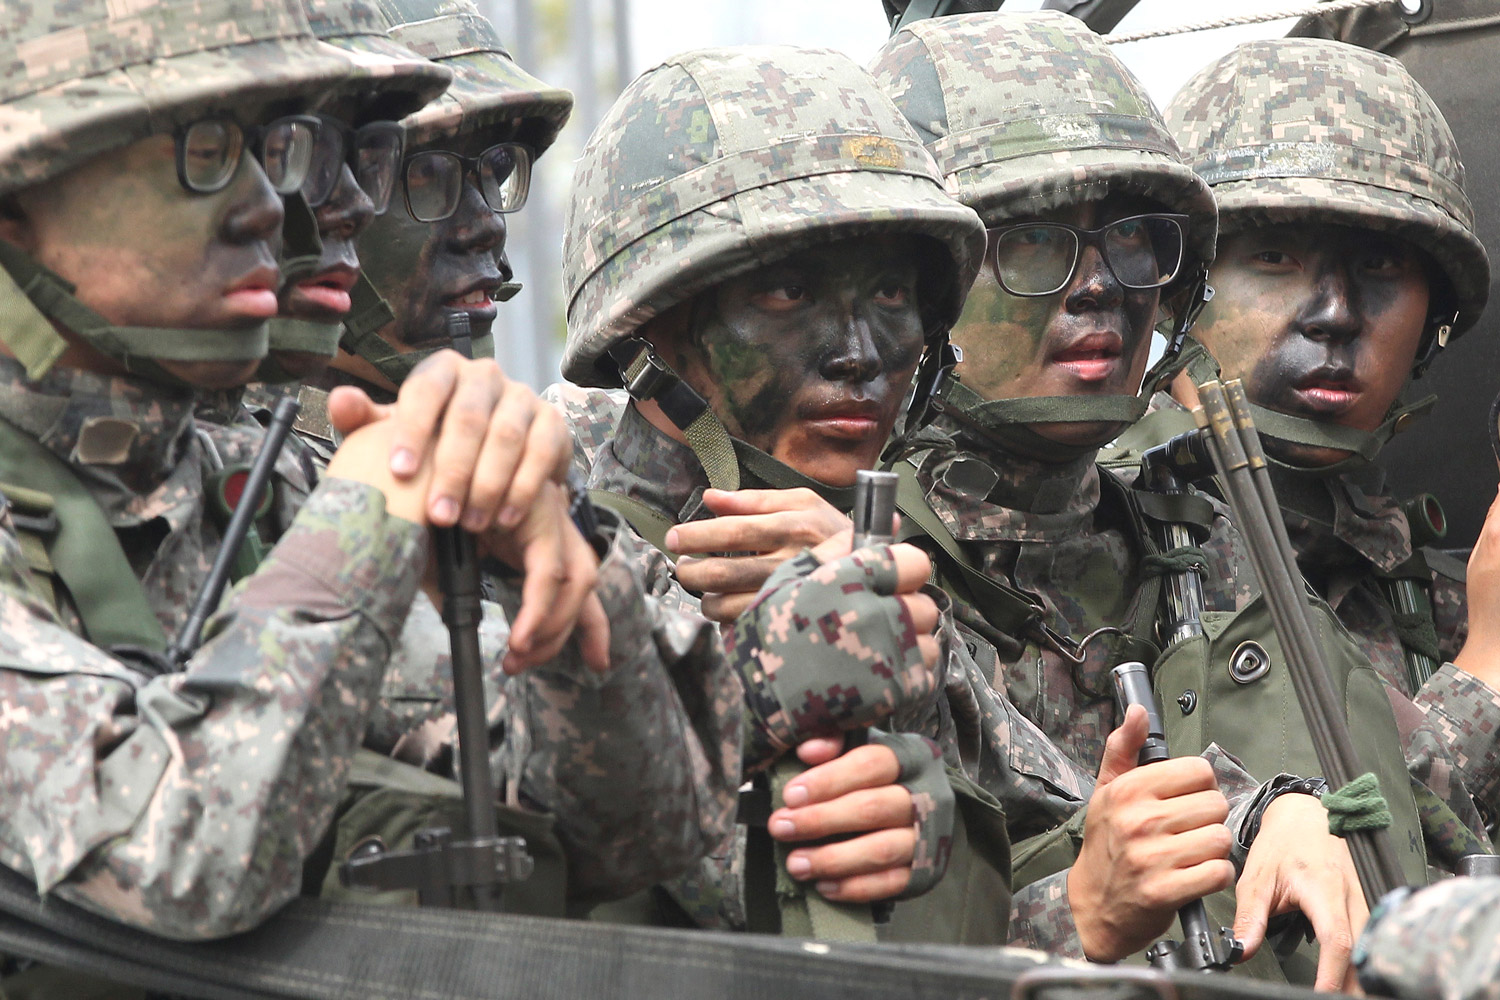 Una serie de incidentes en el ejército surcoreano provoca la indignación pública